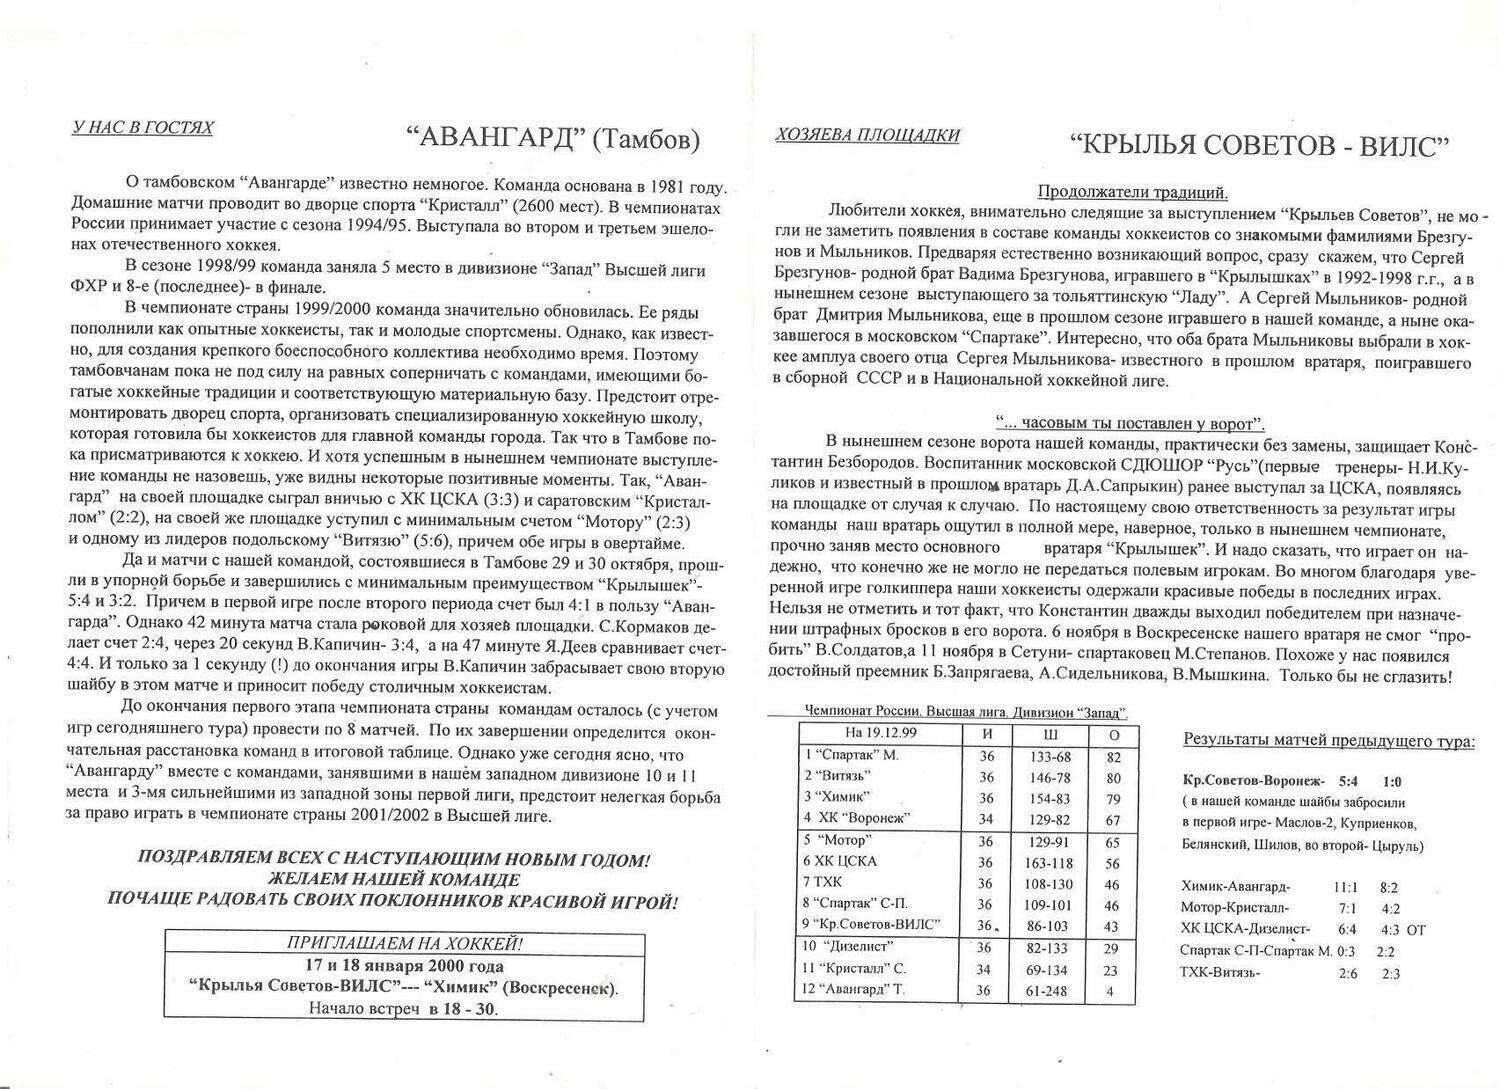 Программа "Крылья Советов-ВИЛС" (Москва) №3 от 19-20.12.1999г.